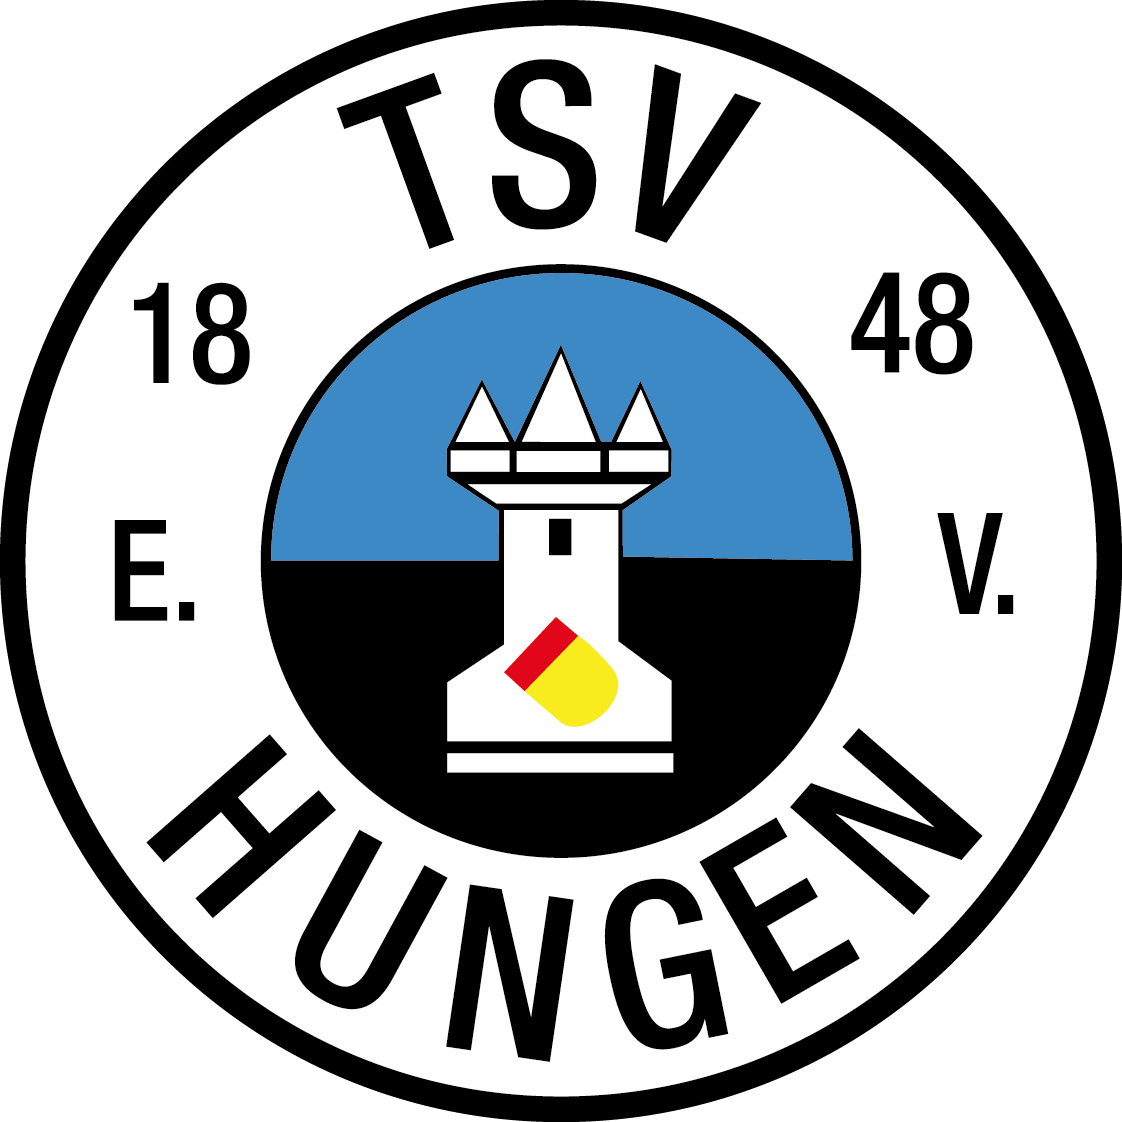 TSV 1848 Hungen e.V.